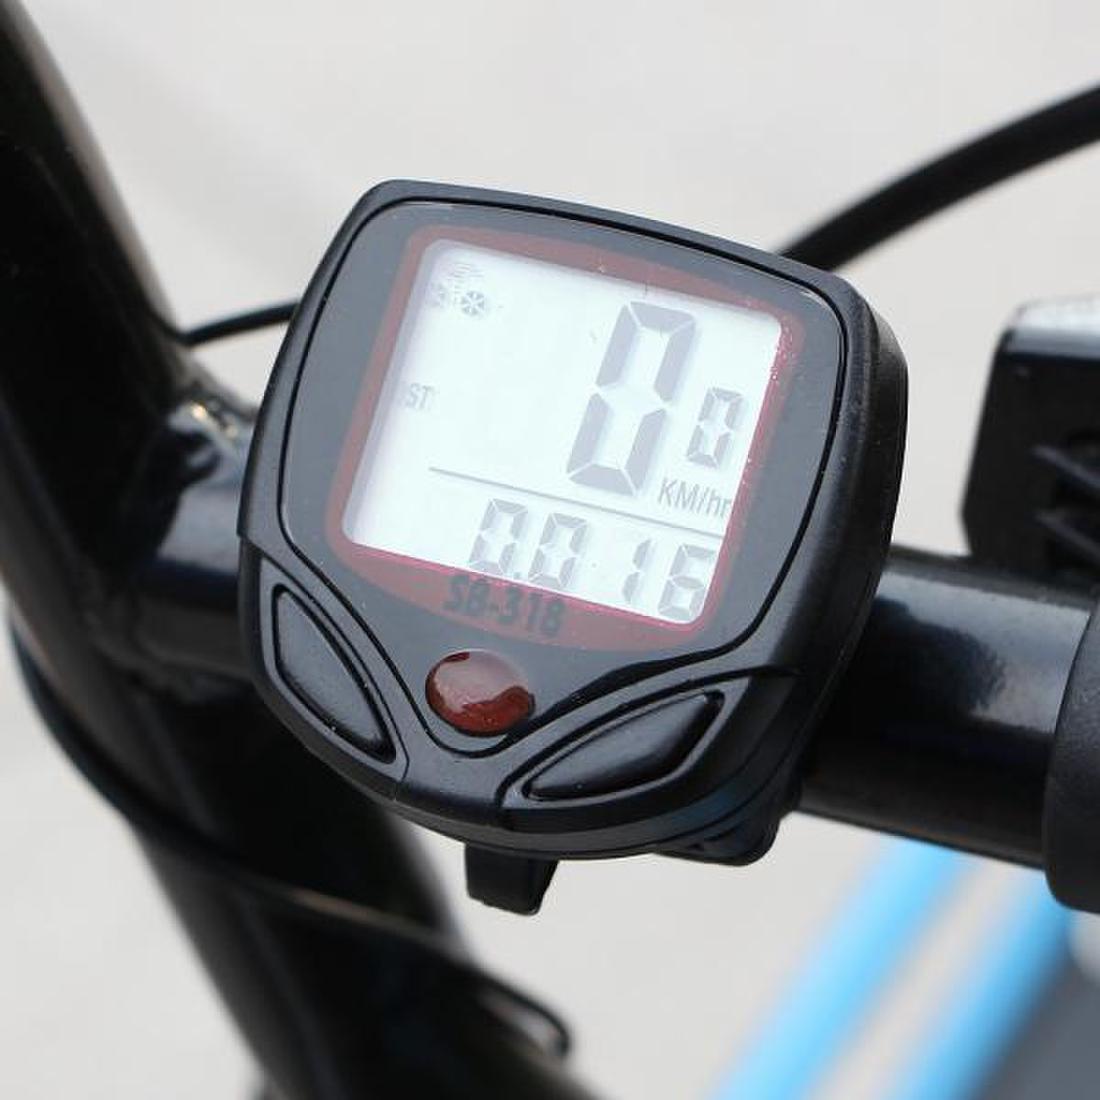 15기능 디지털 자전거속도계 /속도측정 유선속도계-기프트갓, 신세계적 쇼핑포털 Ssg.Com